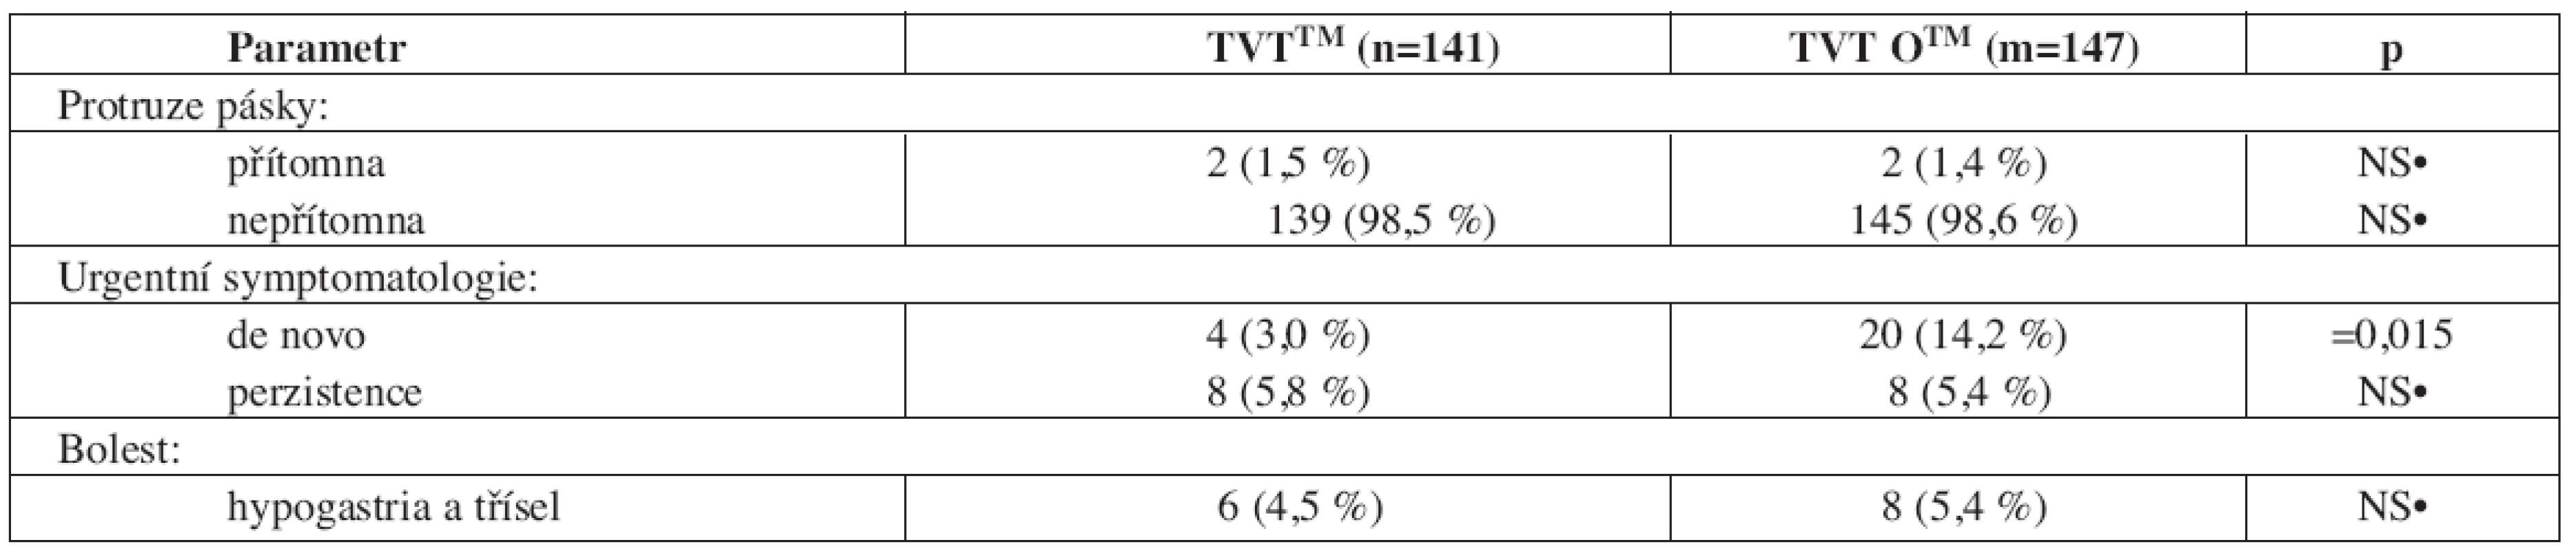 Výsledky vybraných pooperačních kompliací v pozdním pooperačním období (> 7. pooperační den)
operované populace žen technikou TVTTM a TVT OTM